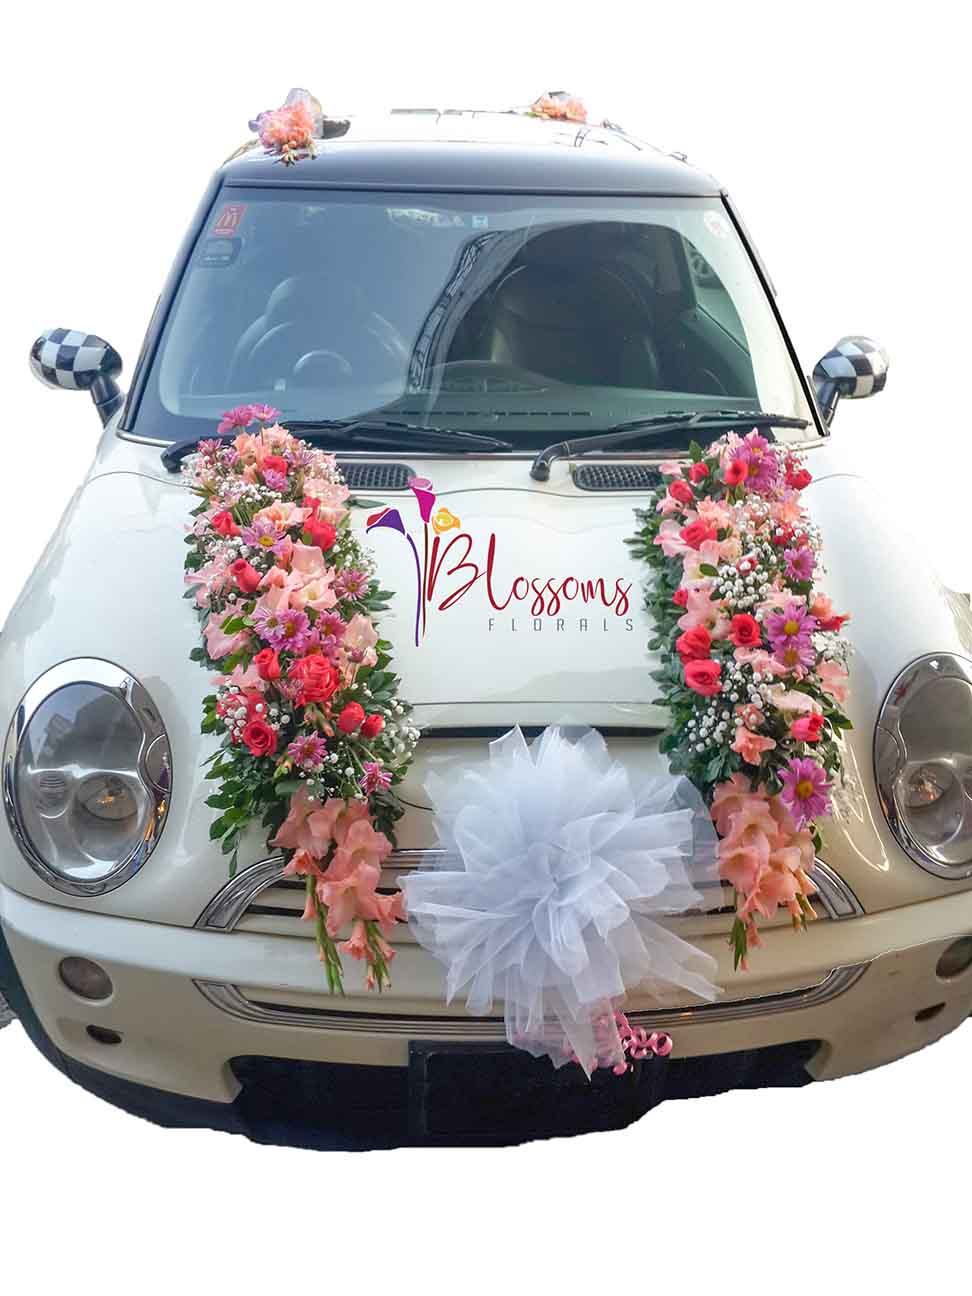 https://www.blossomsflorals.com/public/images/post_images/Engagement%20car%20decoration-38134.jpg